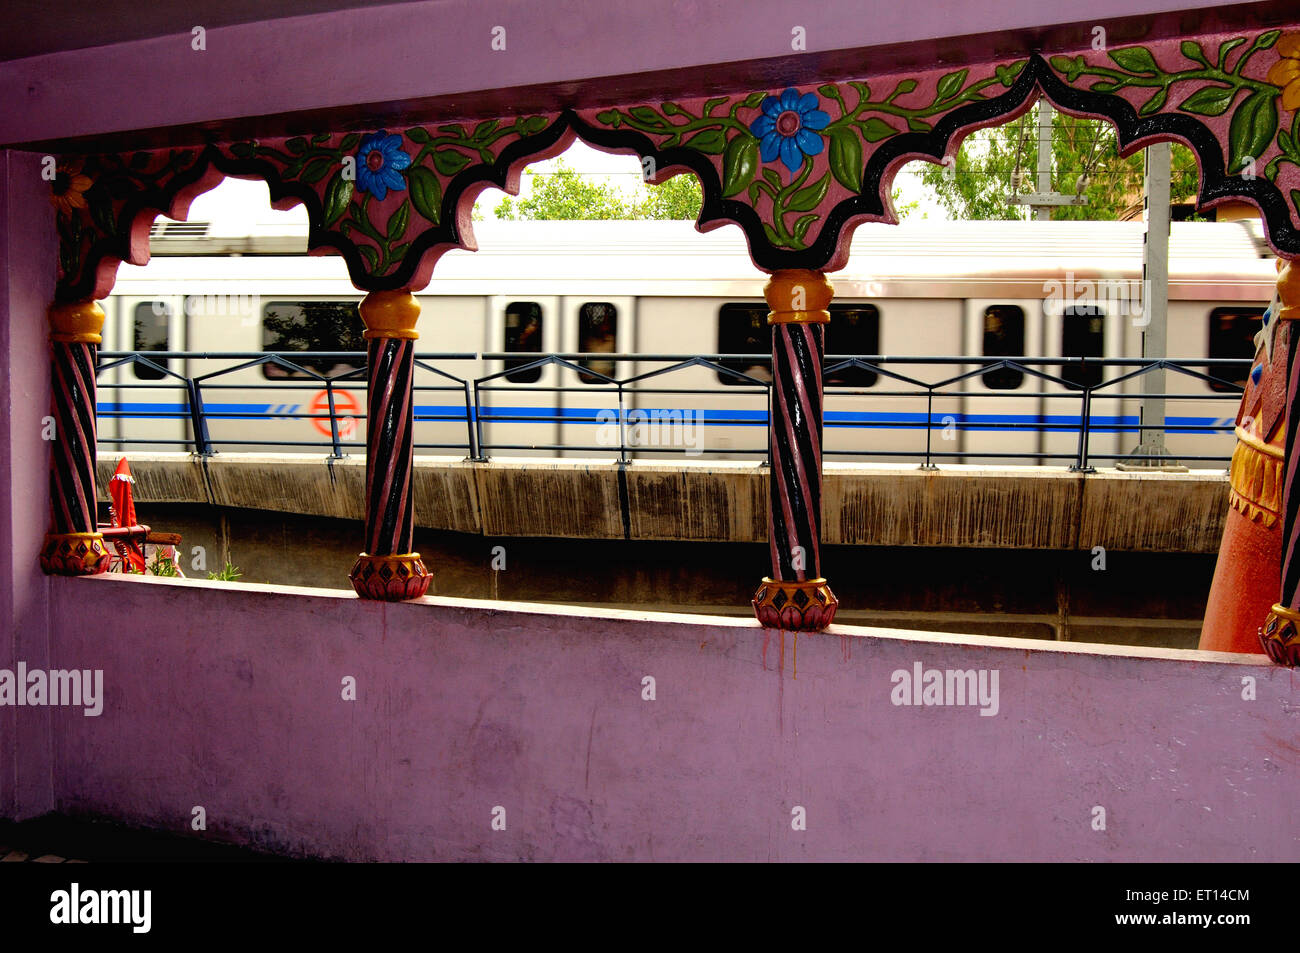 La gare de métro vu de l'intérieur du temple de hanuman panchkuan ; route ; New Delhi Inde Banque D'Images